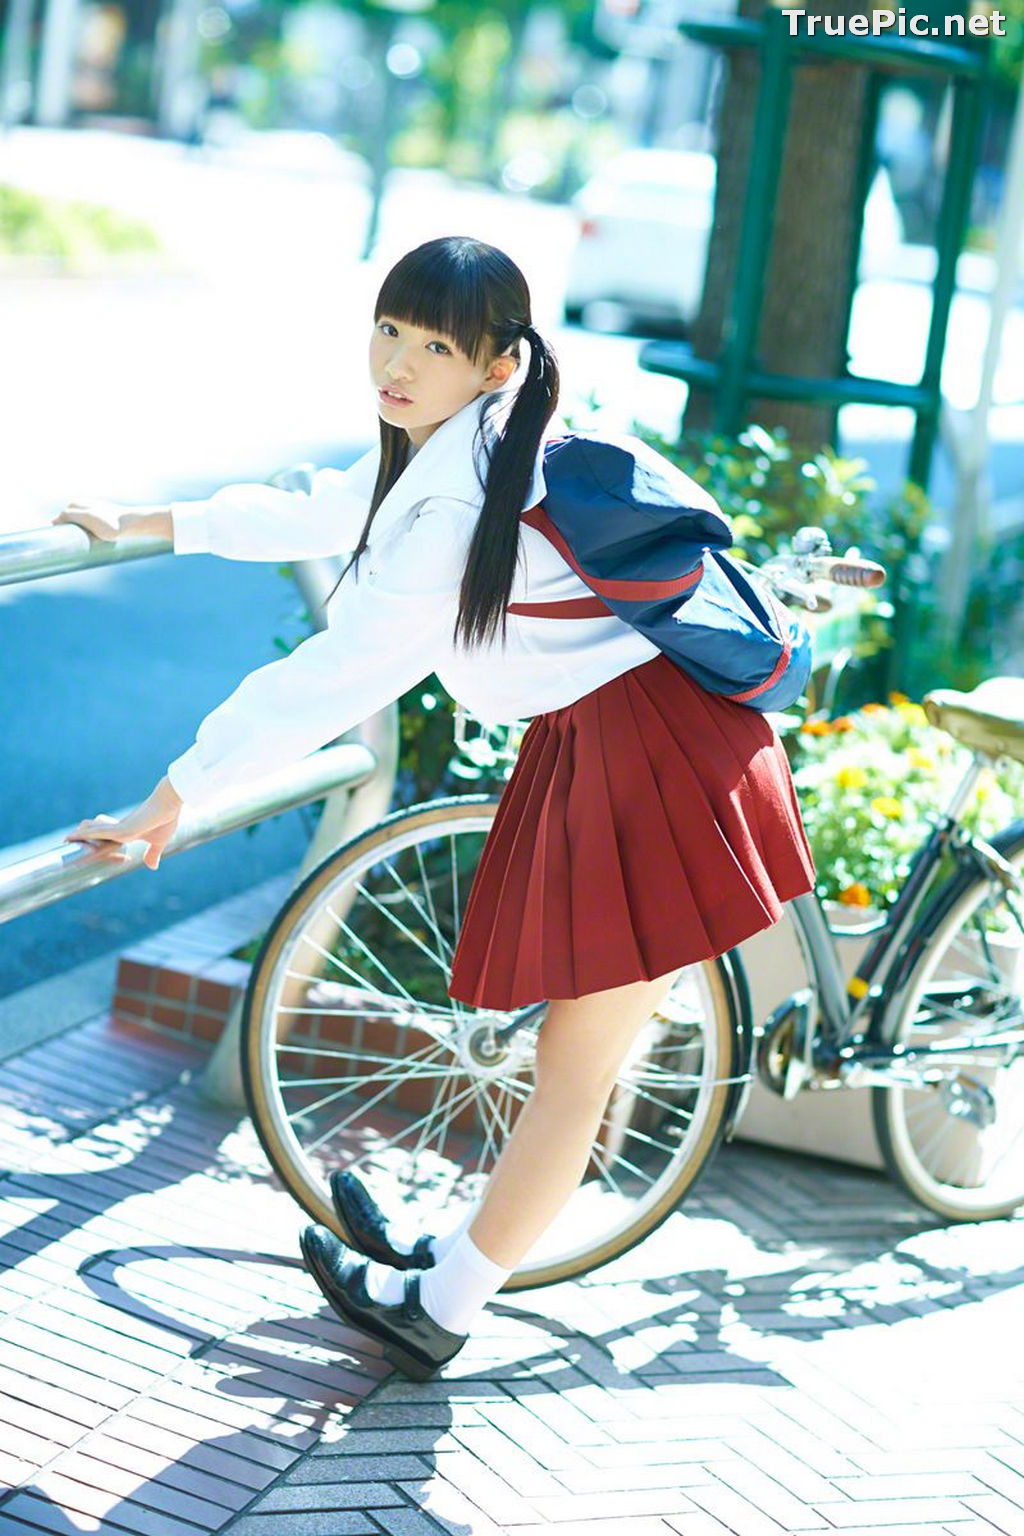 Image Wanibooks No.133 - Japanese Model and Singer - Hikari Shiina - TruePic.net - Picture-76